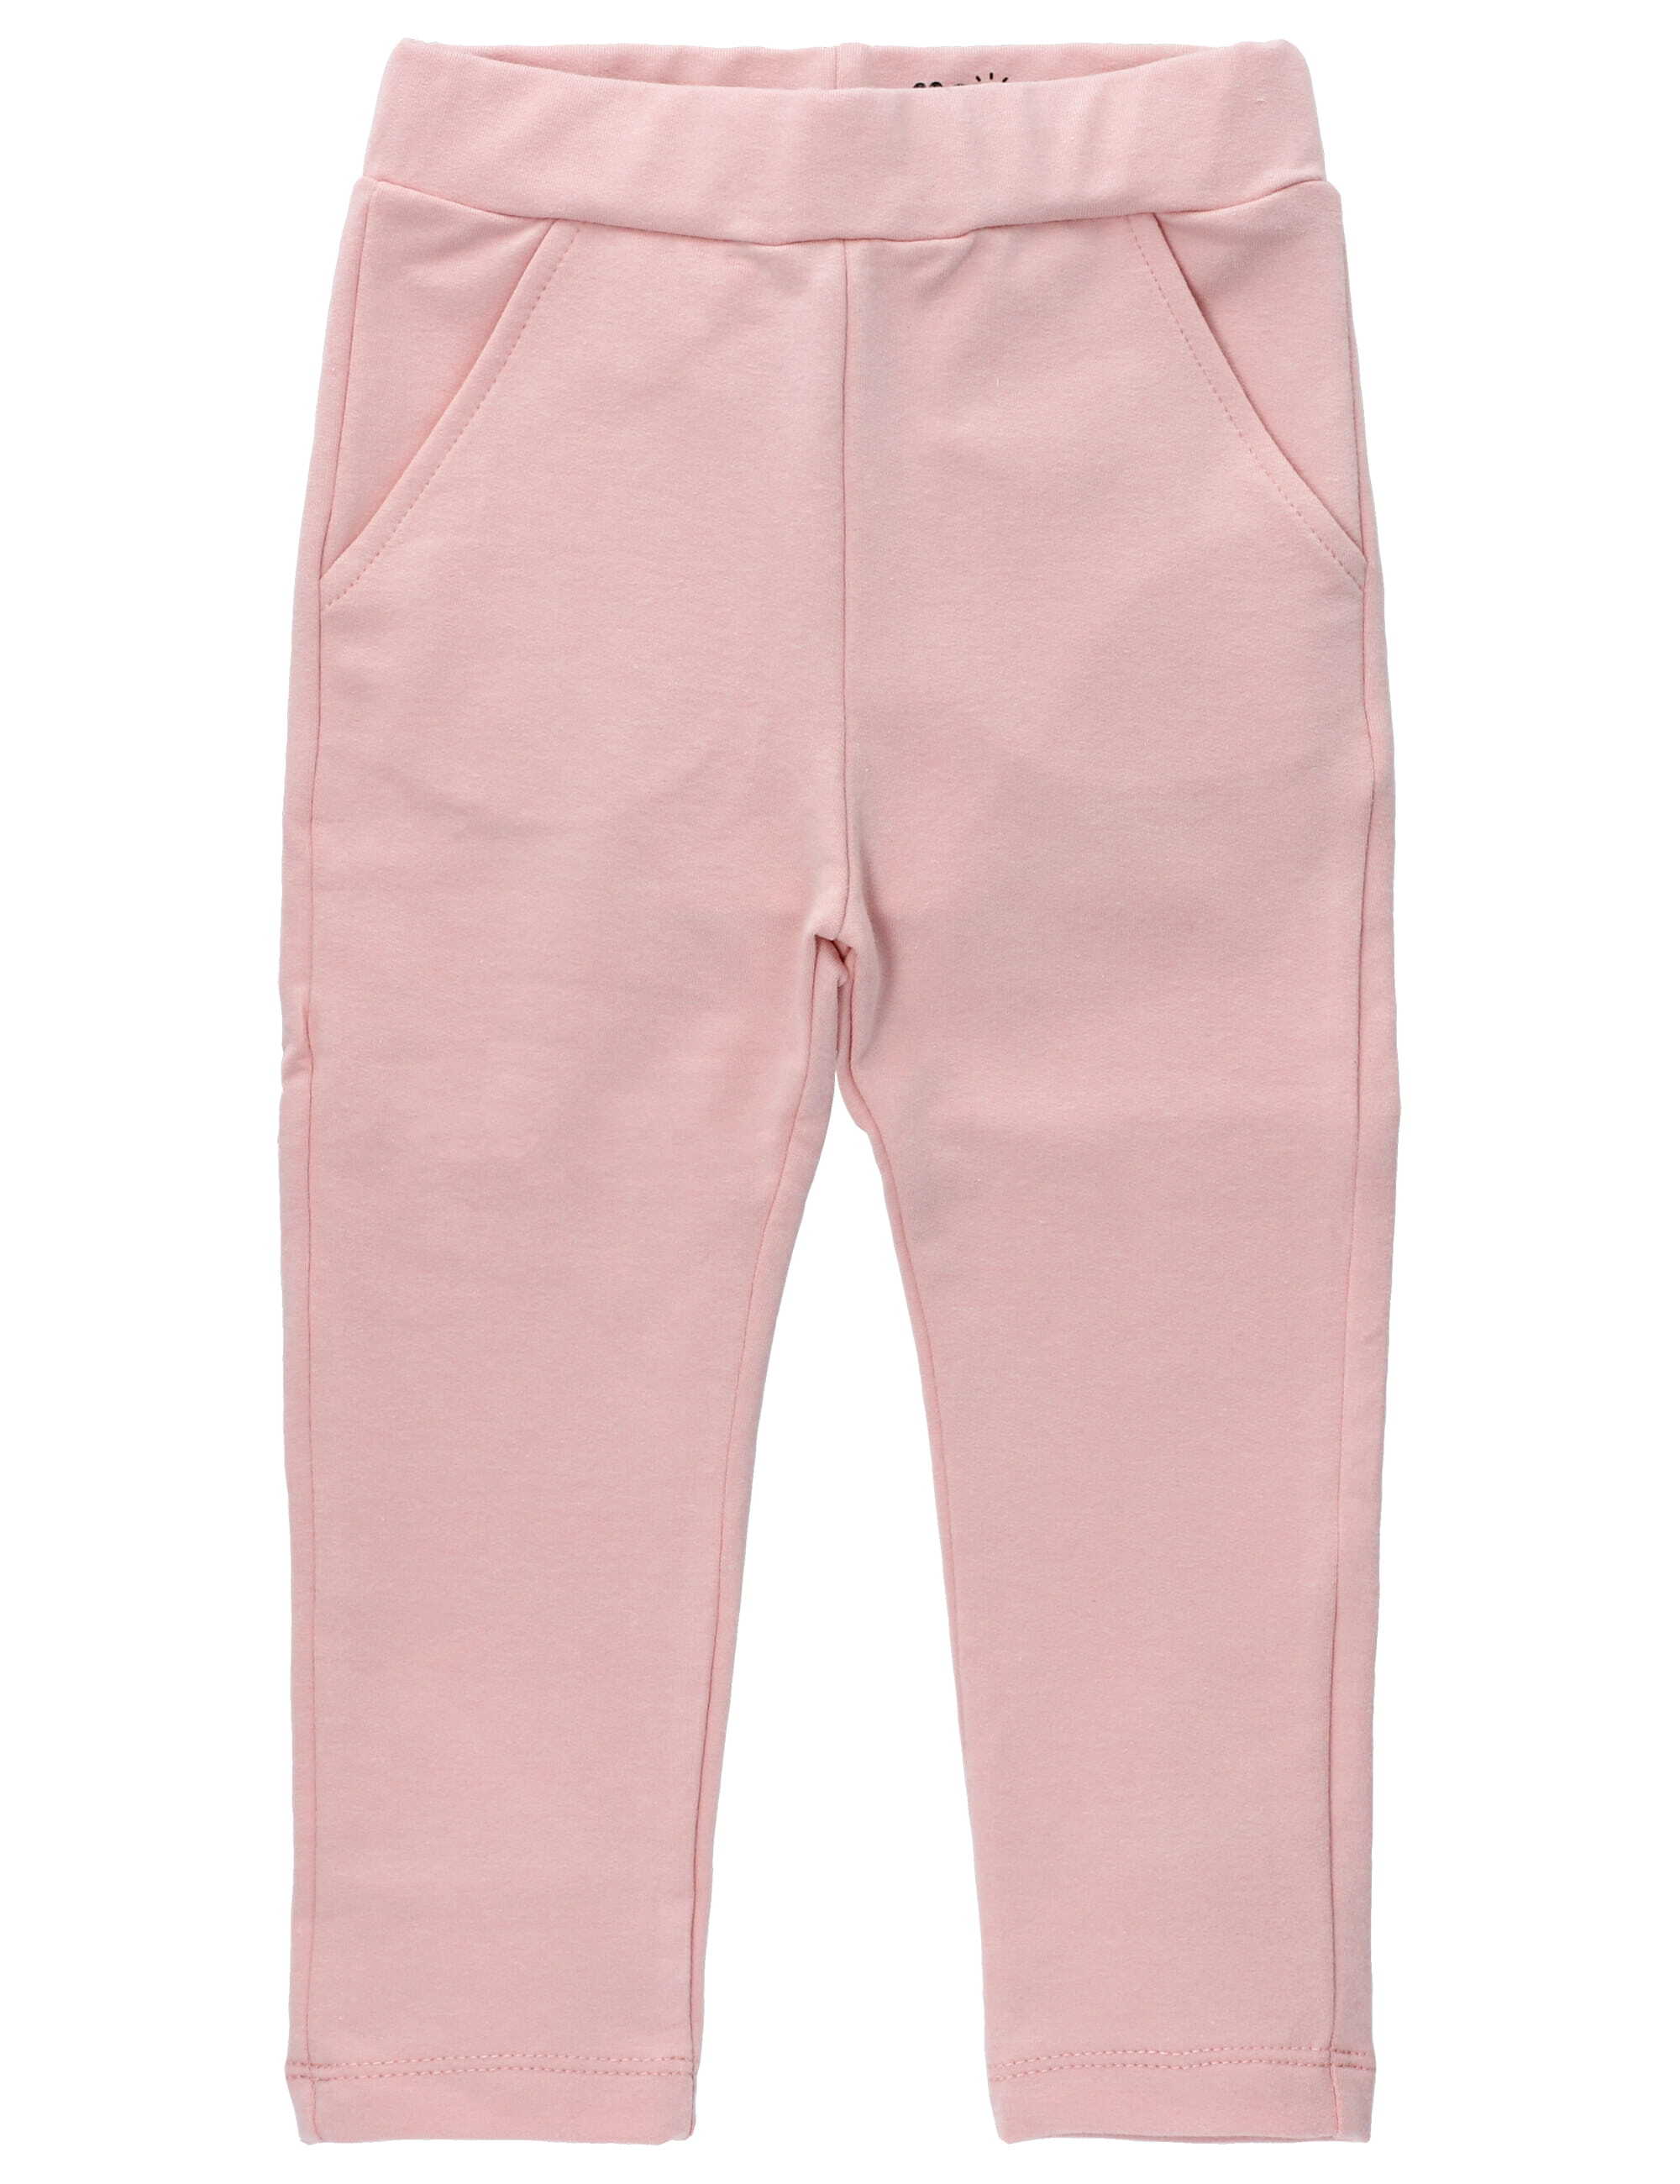 Тканевые брюки MaBu Kids Fairy, розовый